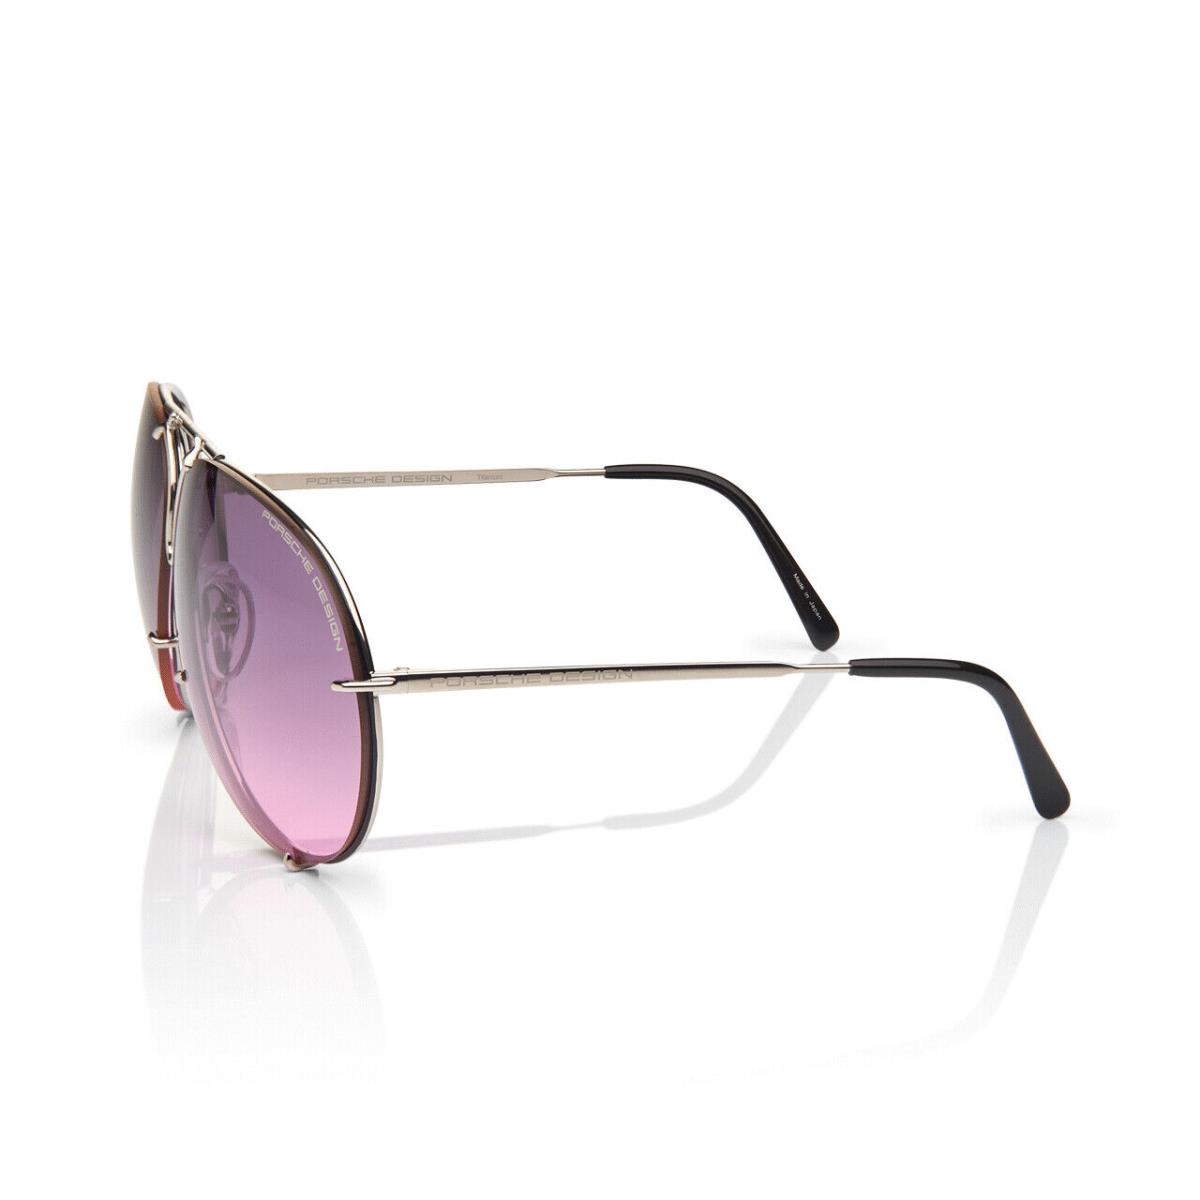 Porsche Design P8478 Iconic Sunglasses M - Titanium/pink Gradient + Extra Lenses